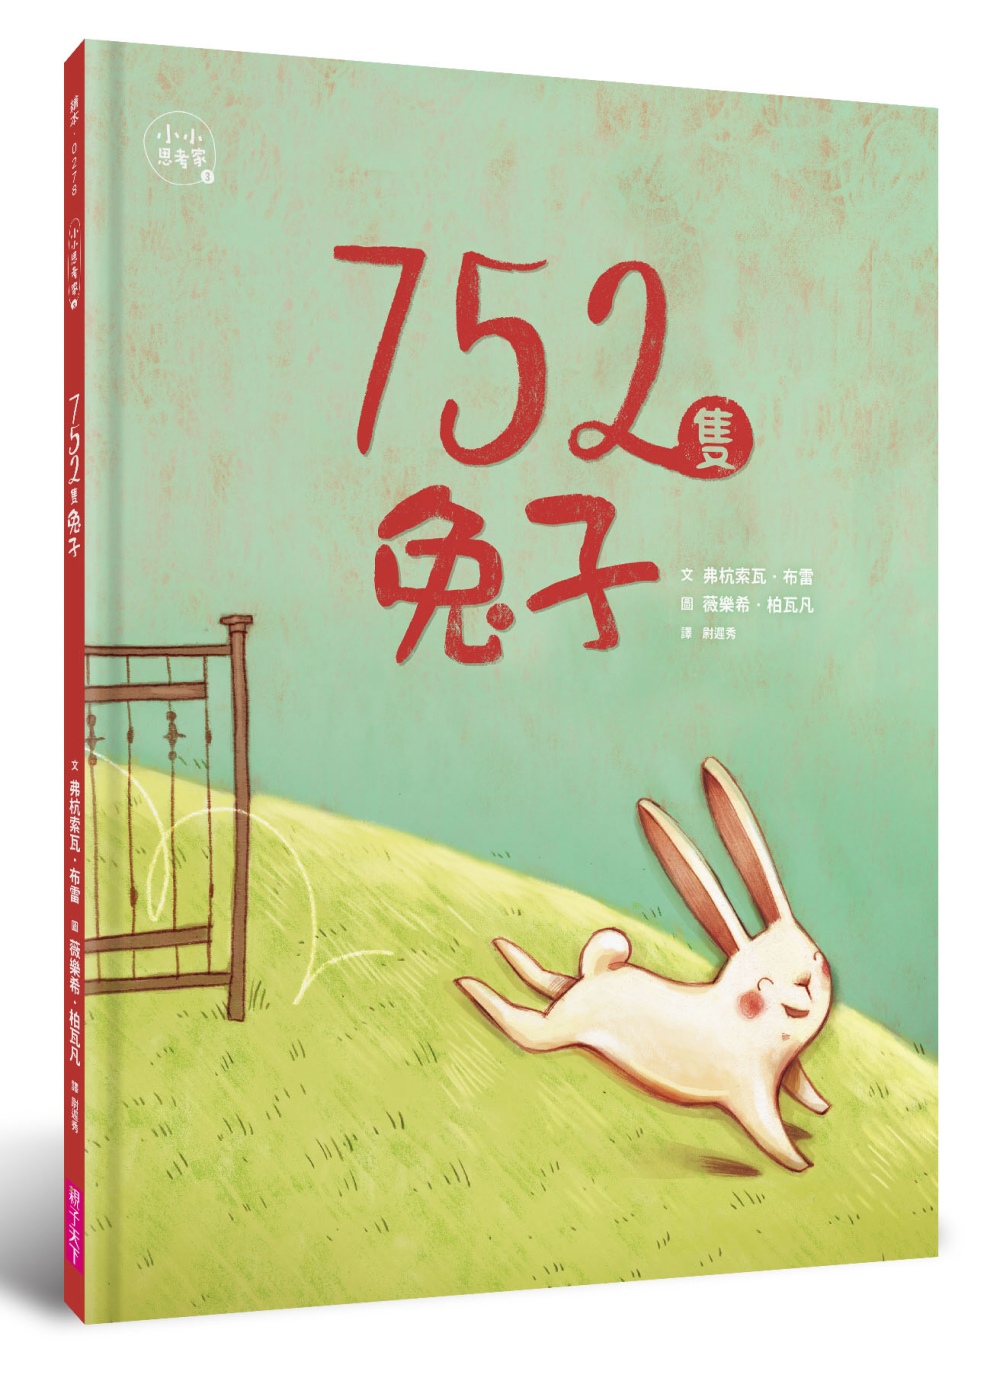 752隻兔子(小小思考家3)